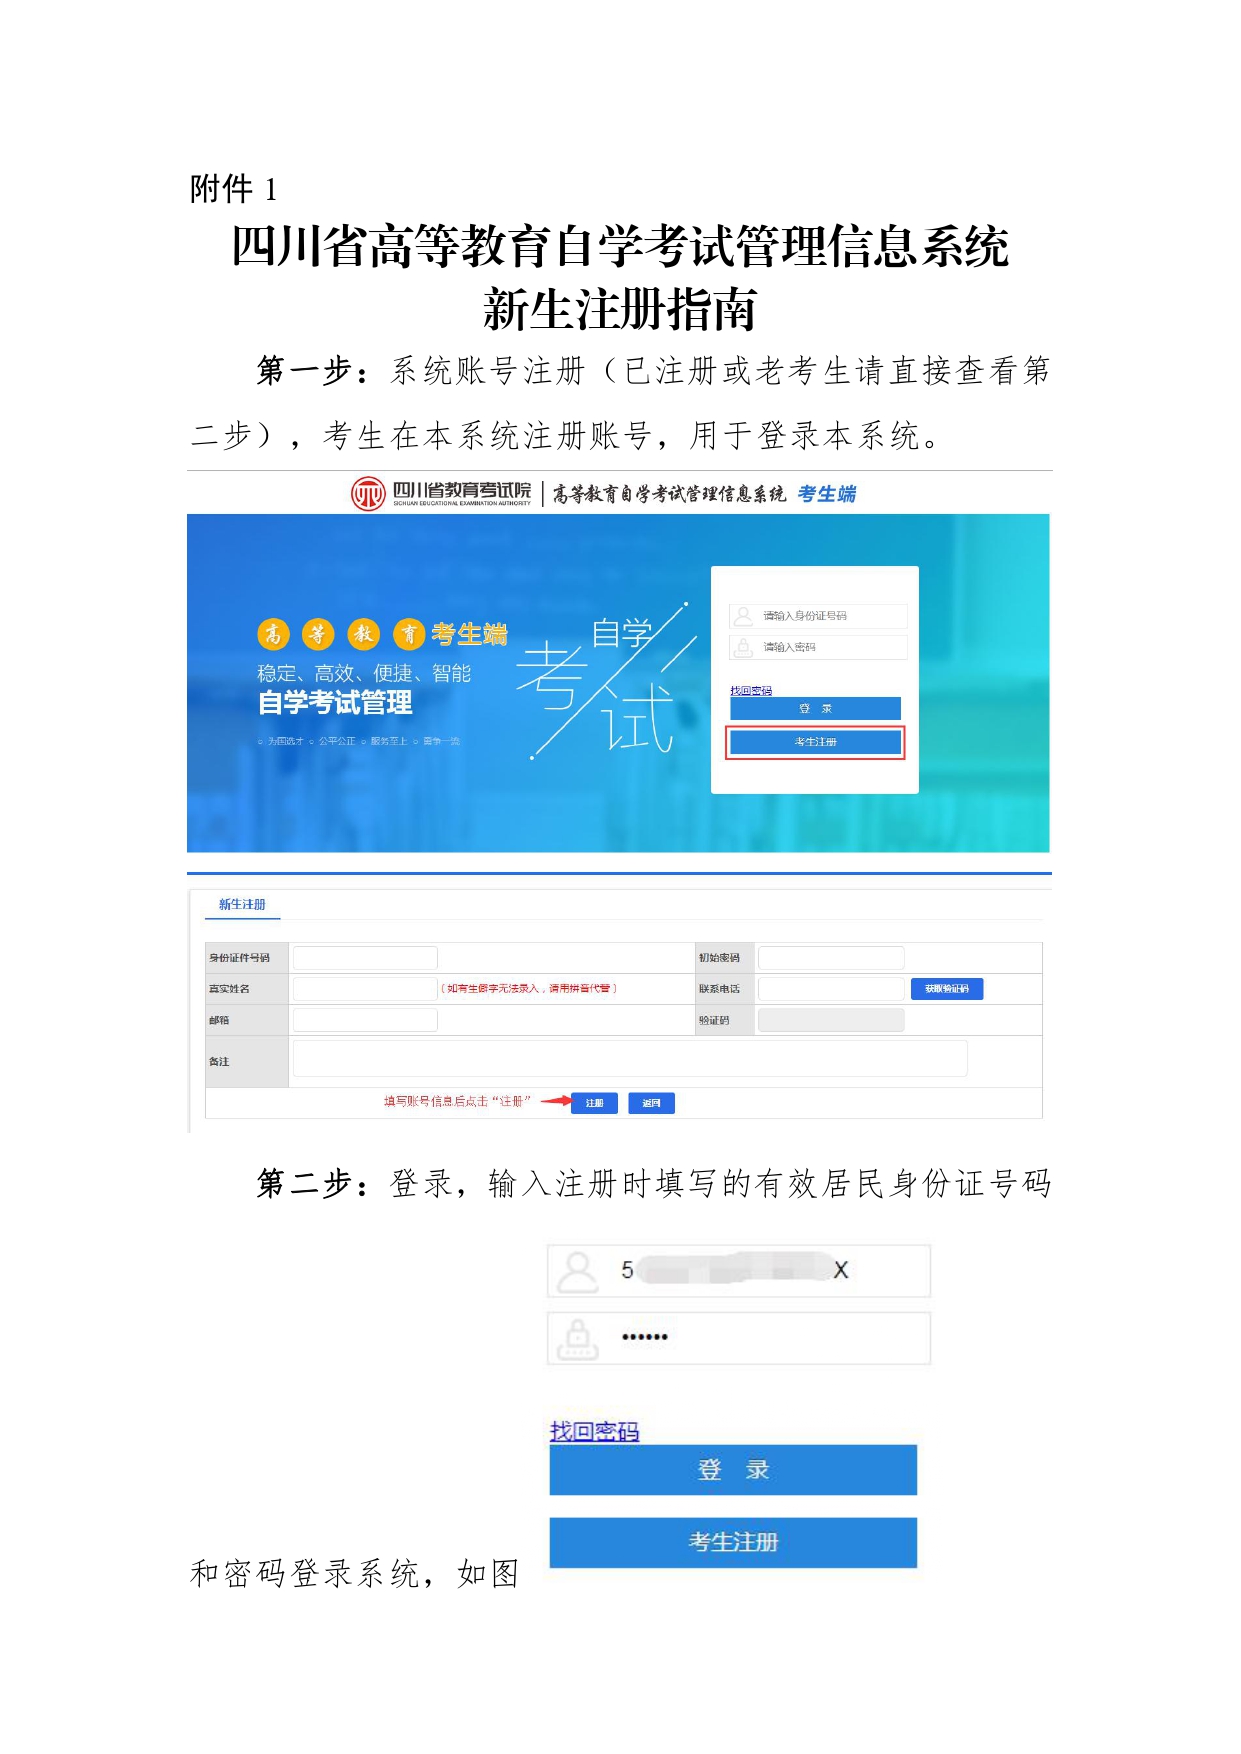 四川自考2022年管理信息系统新生注册指南